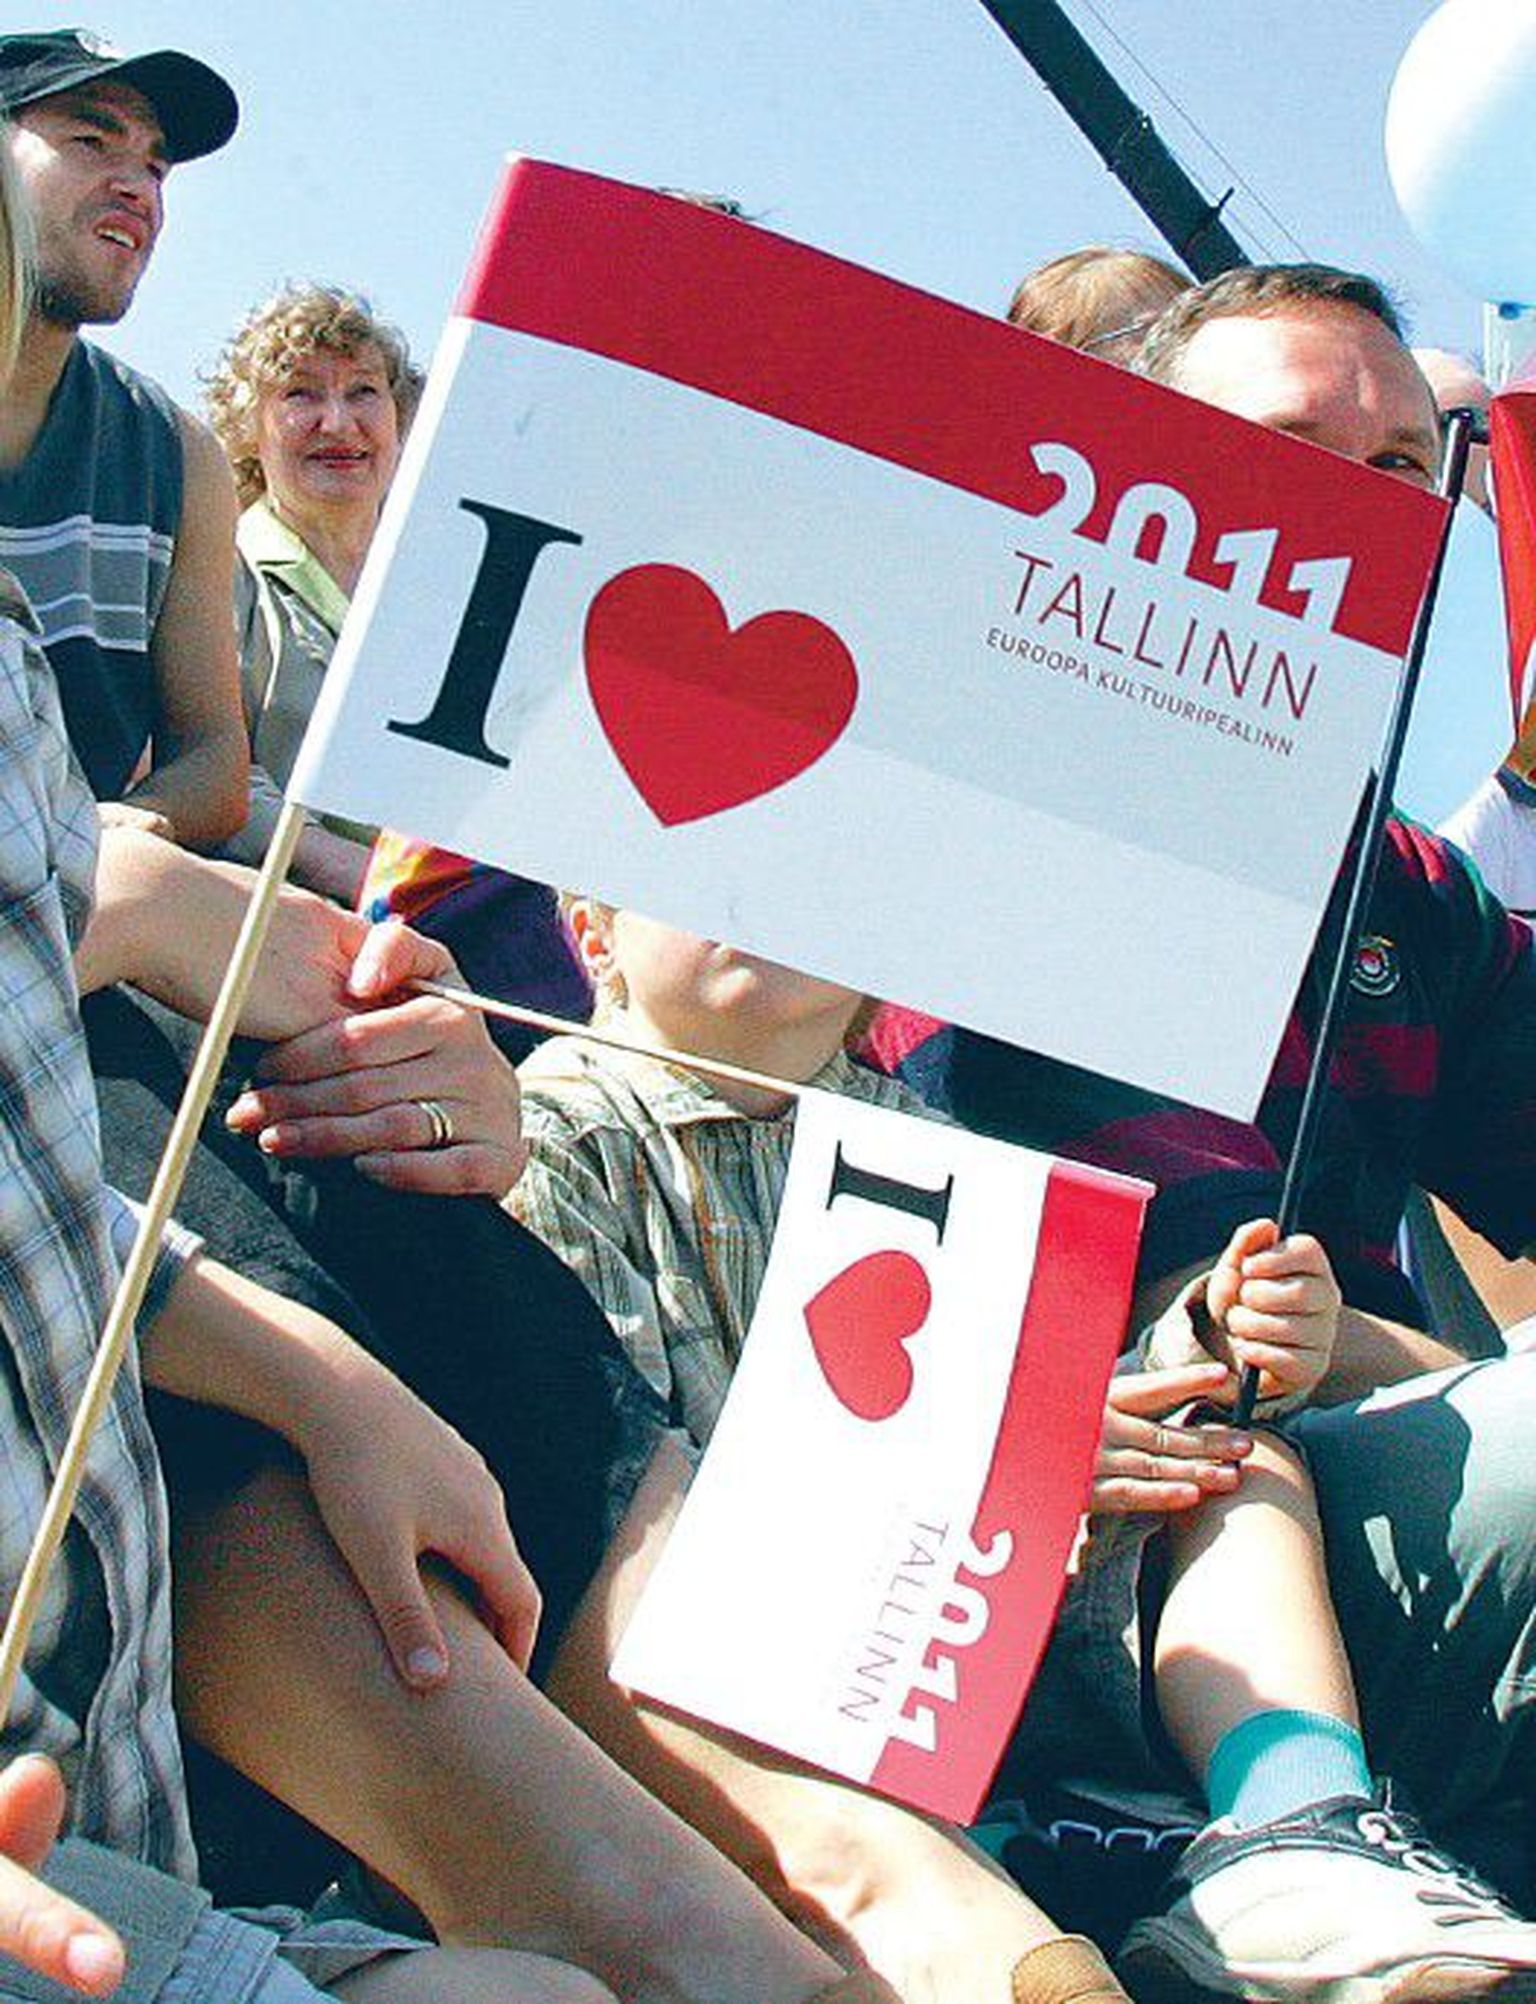 Флажок с логотипом "Таллинн - культурная столица Европы 2011".